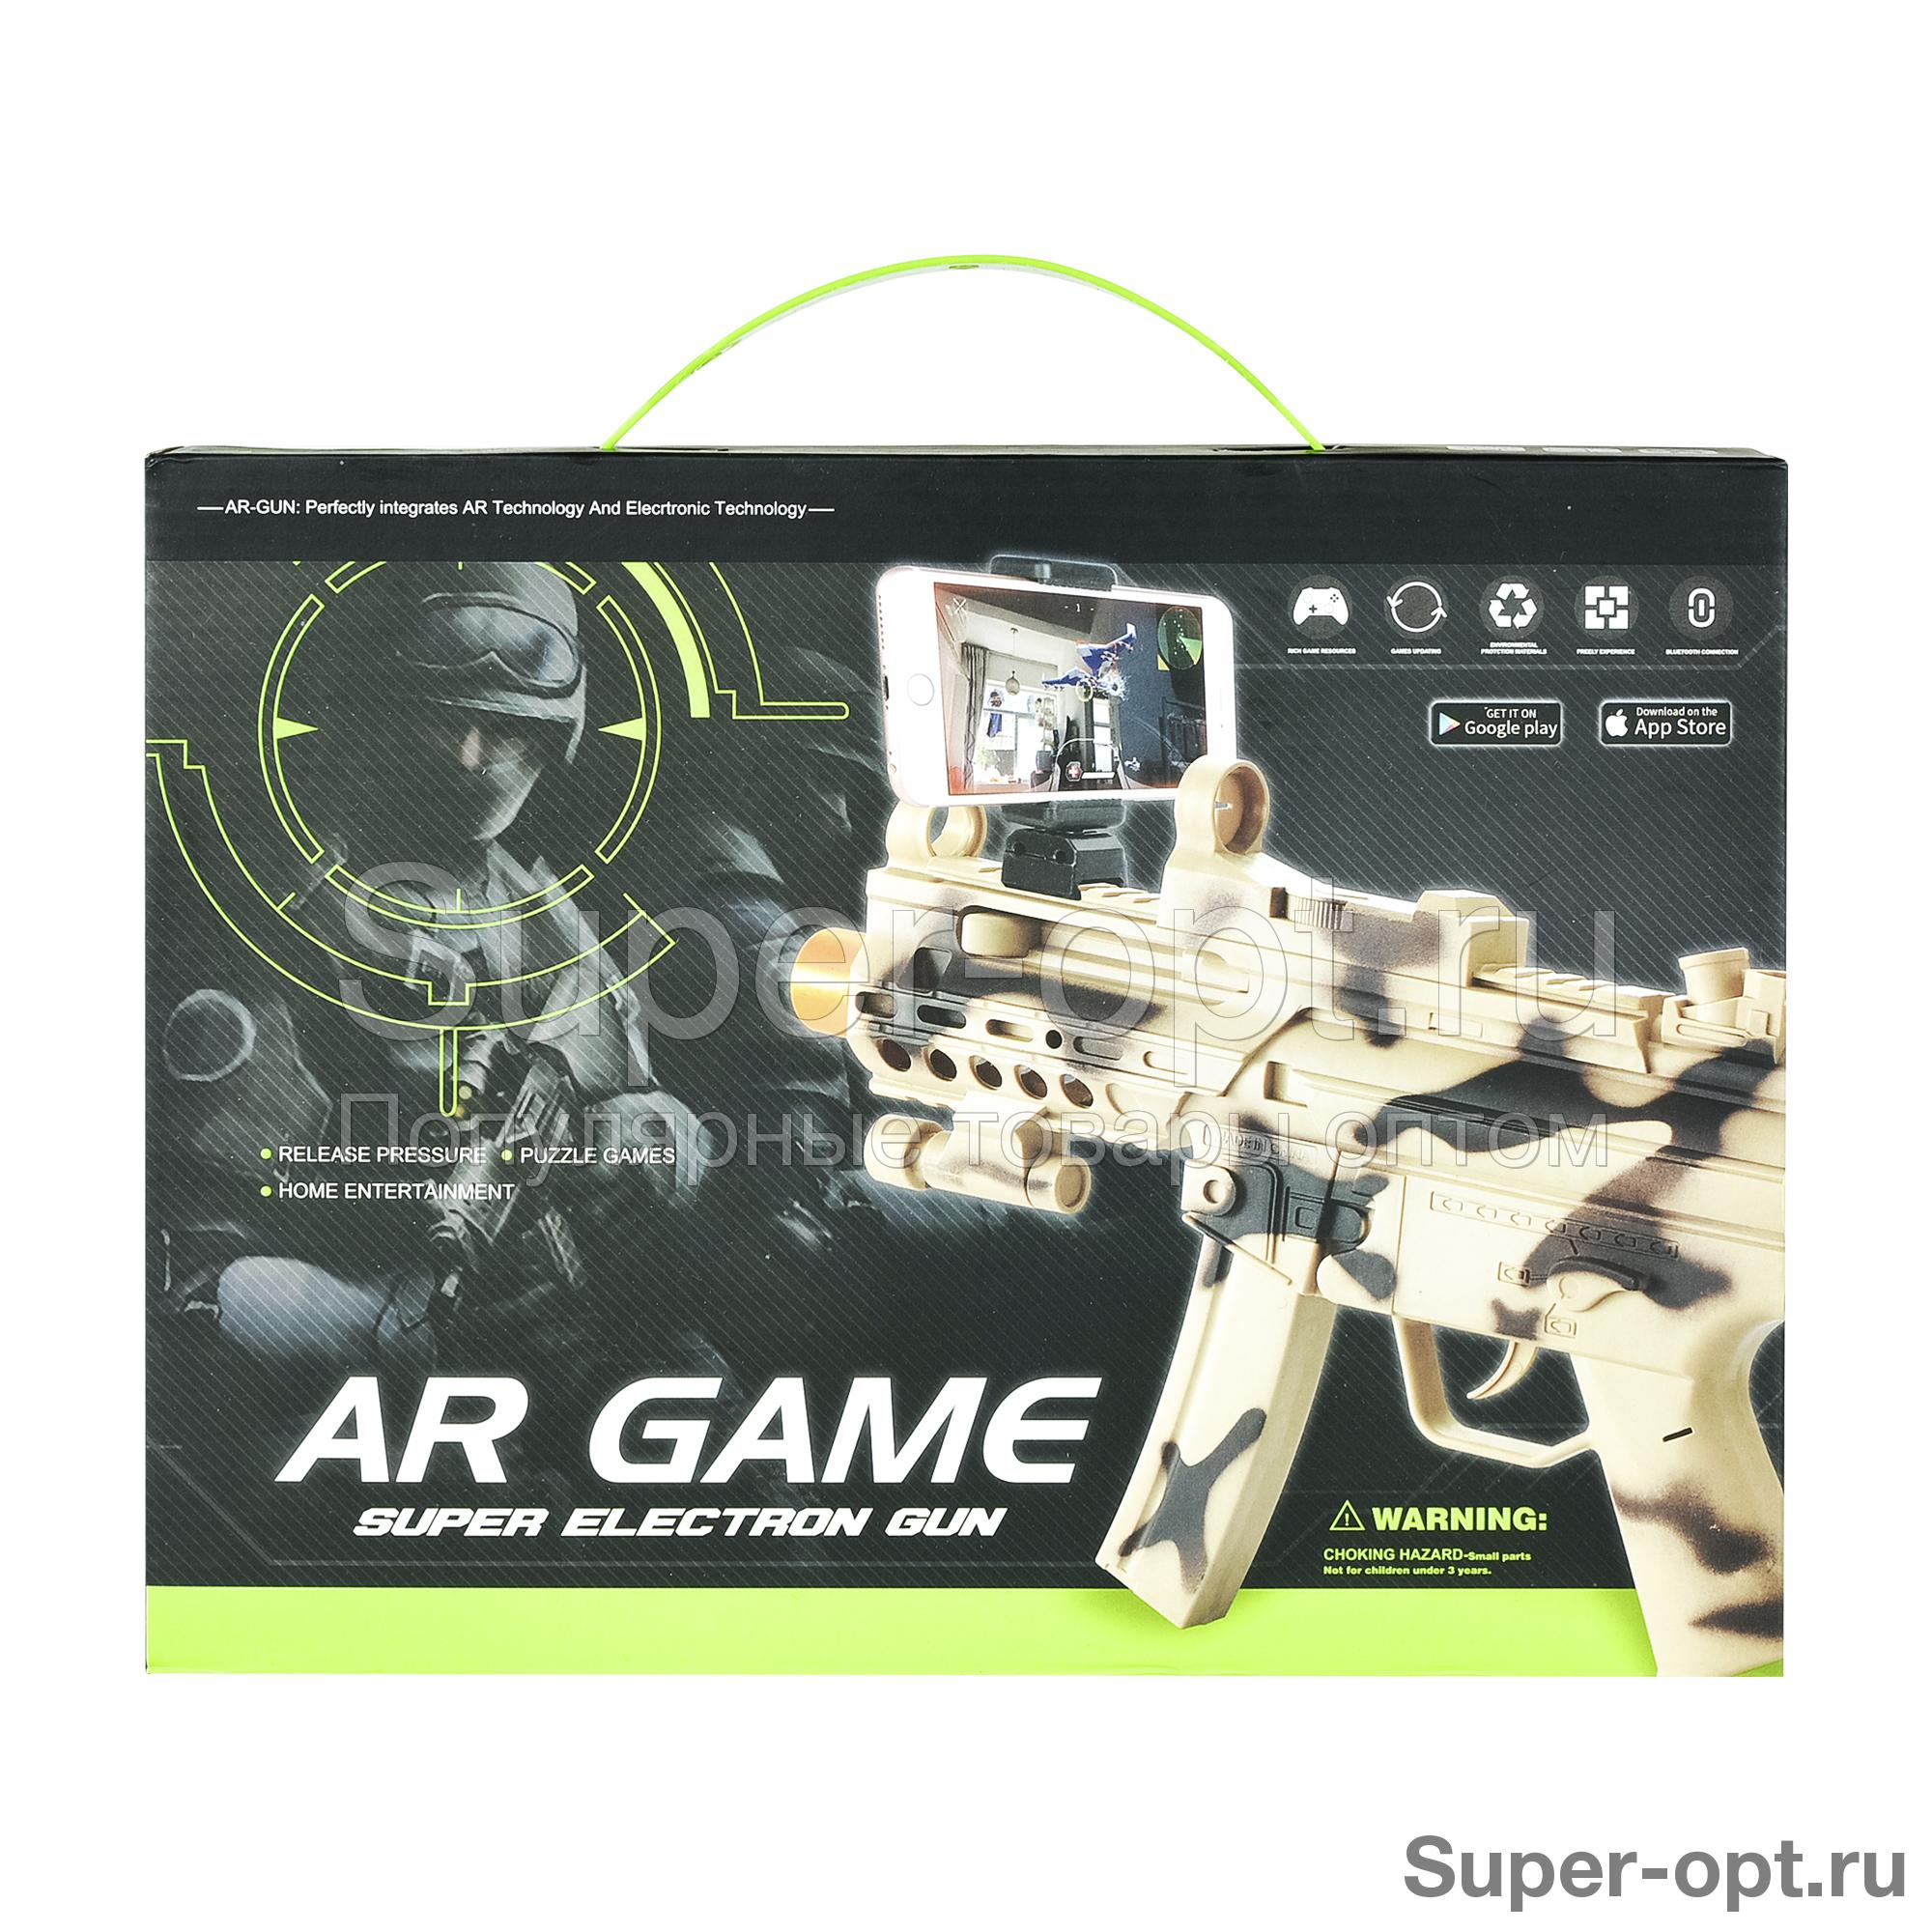 Автомат AR Game Gun c дополненной реальностью